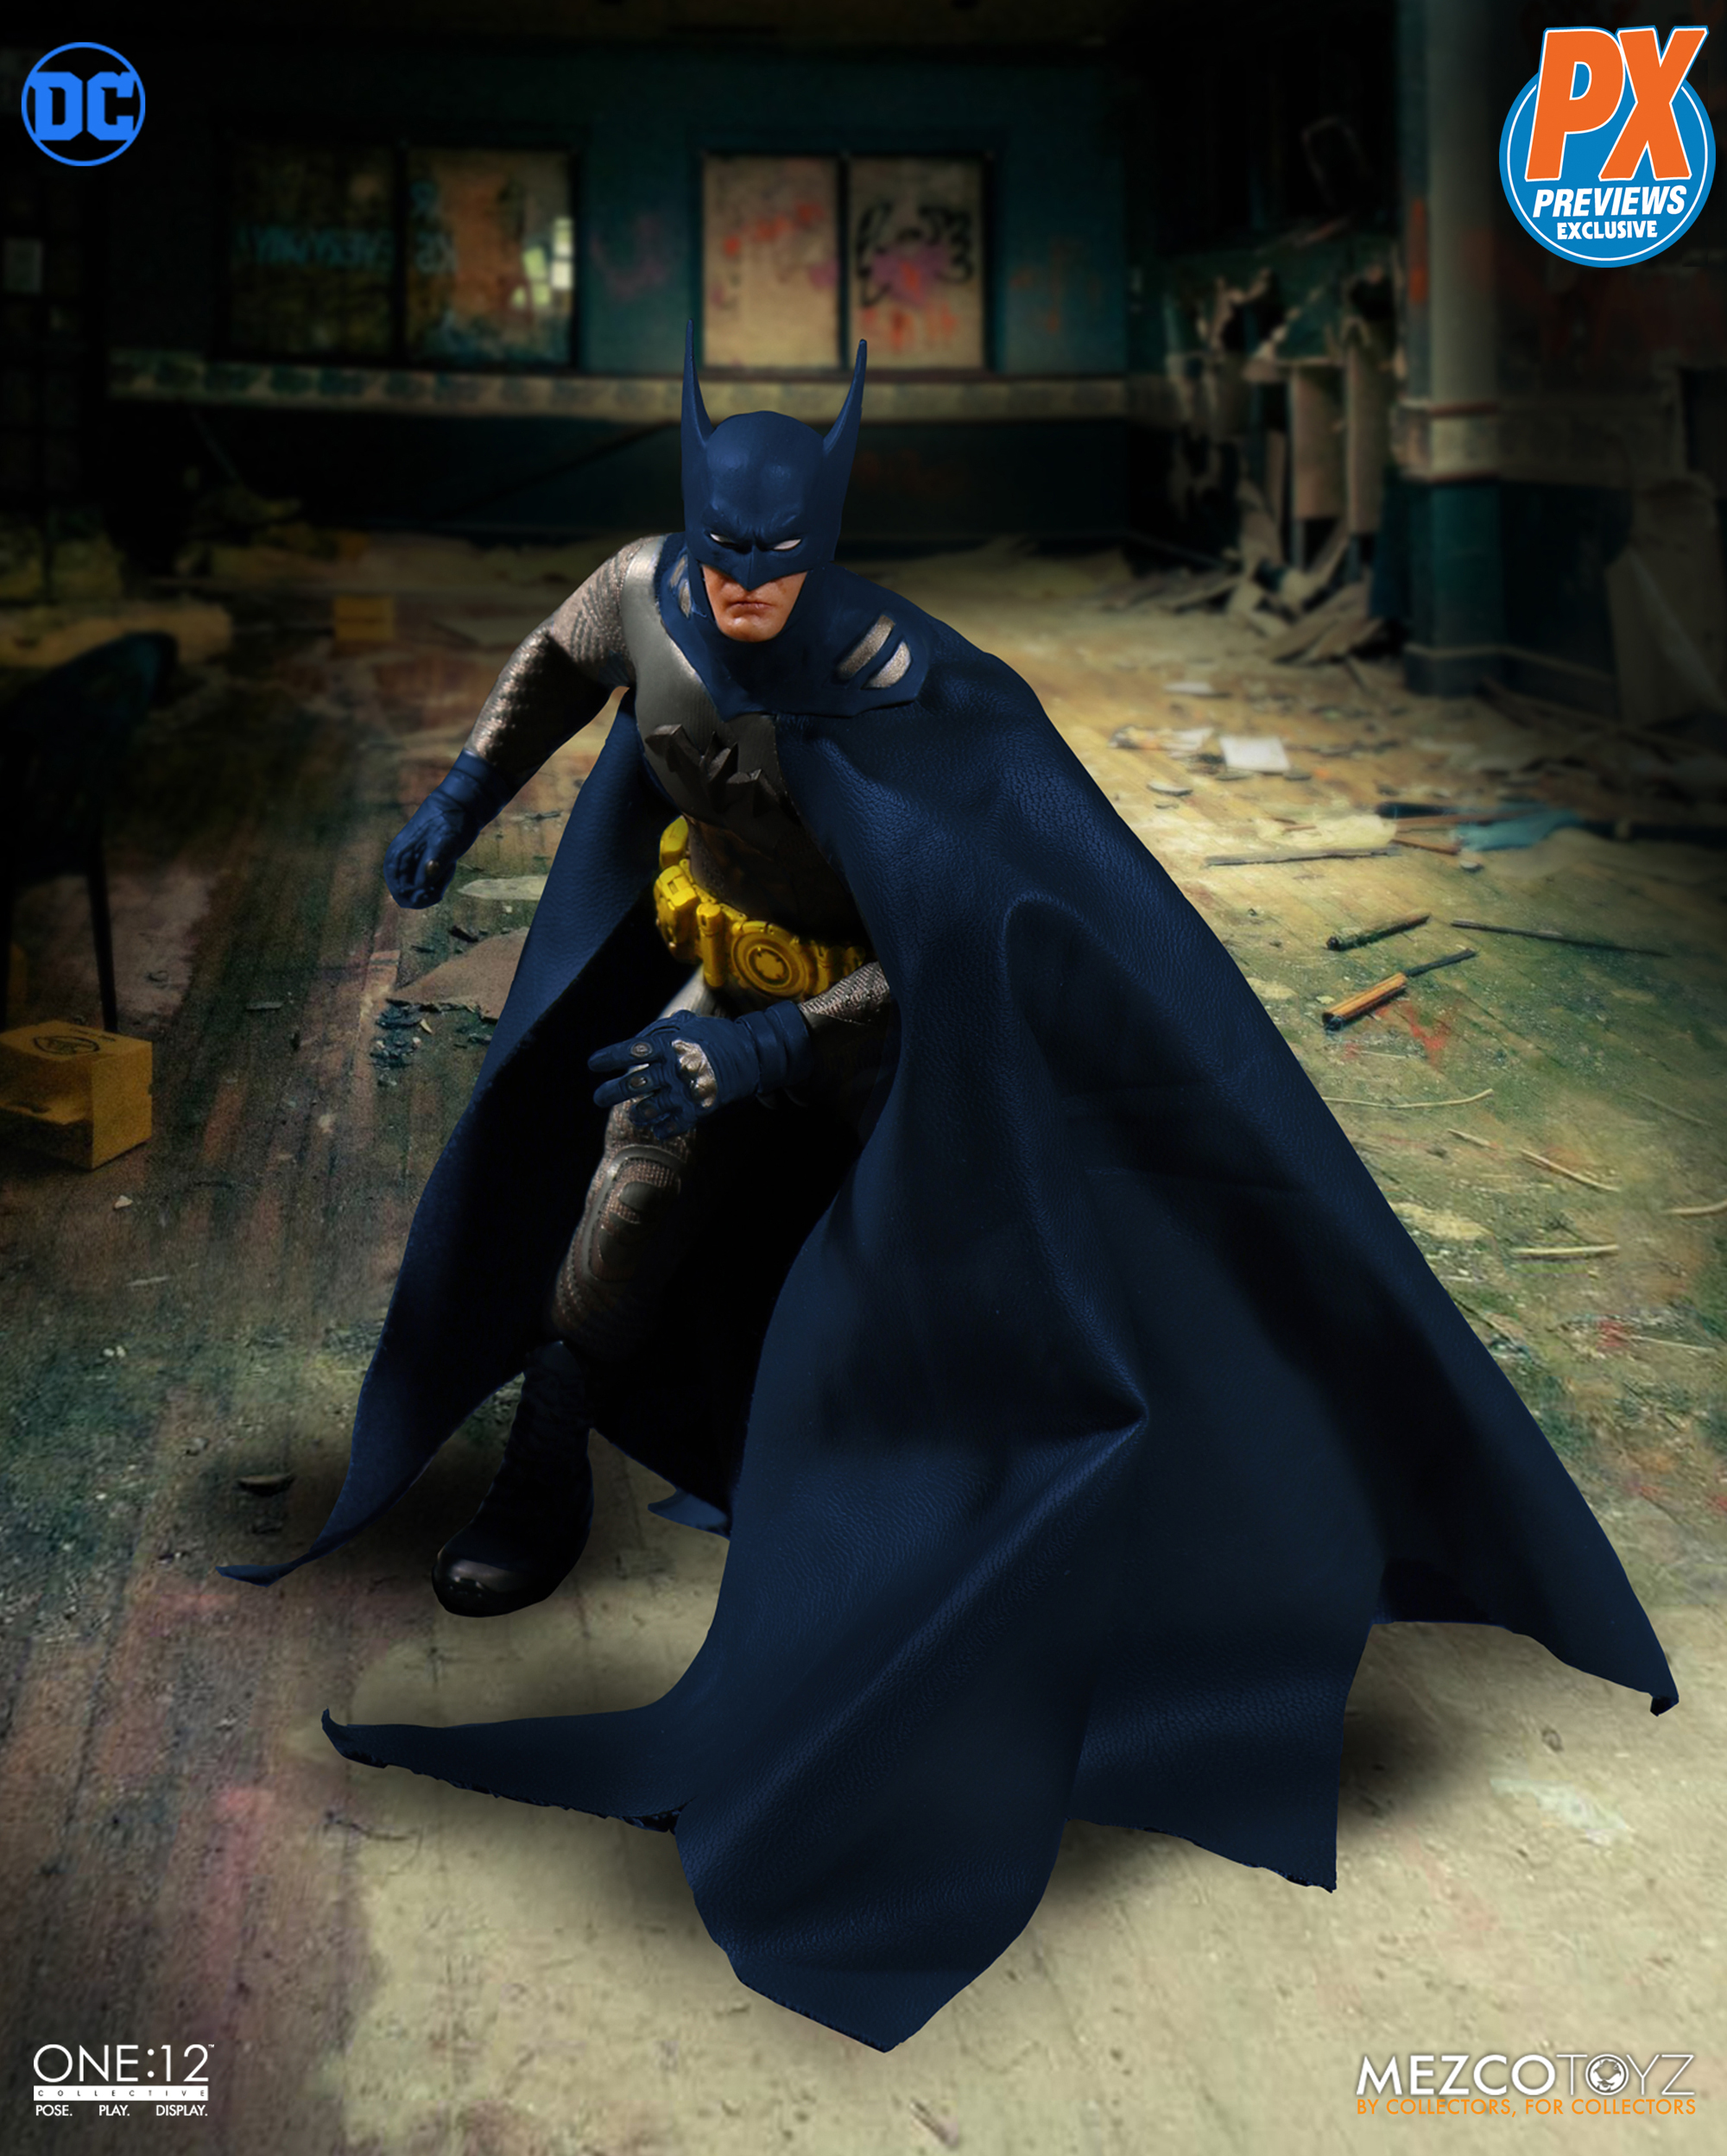 Mezco One:12 Collective DC PX Previews Exclusive Ascending Knight Batman Blue 